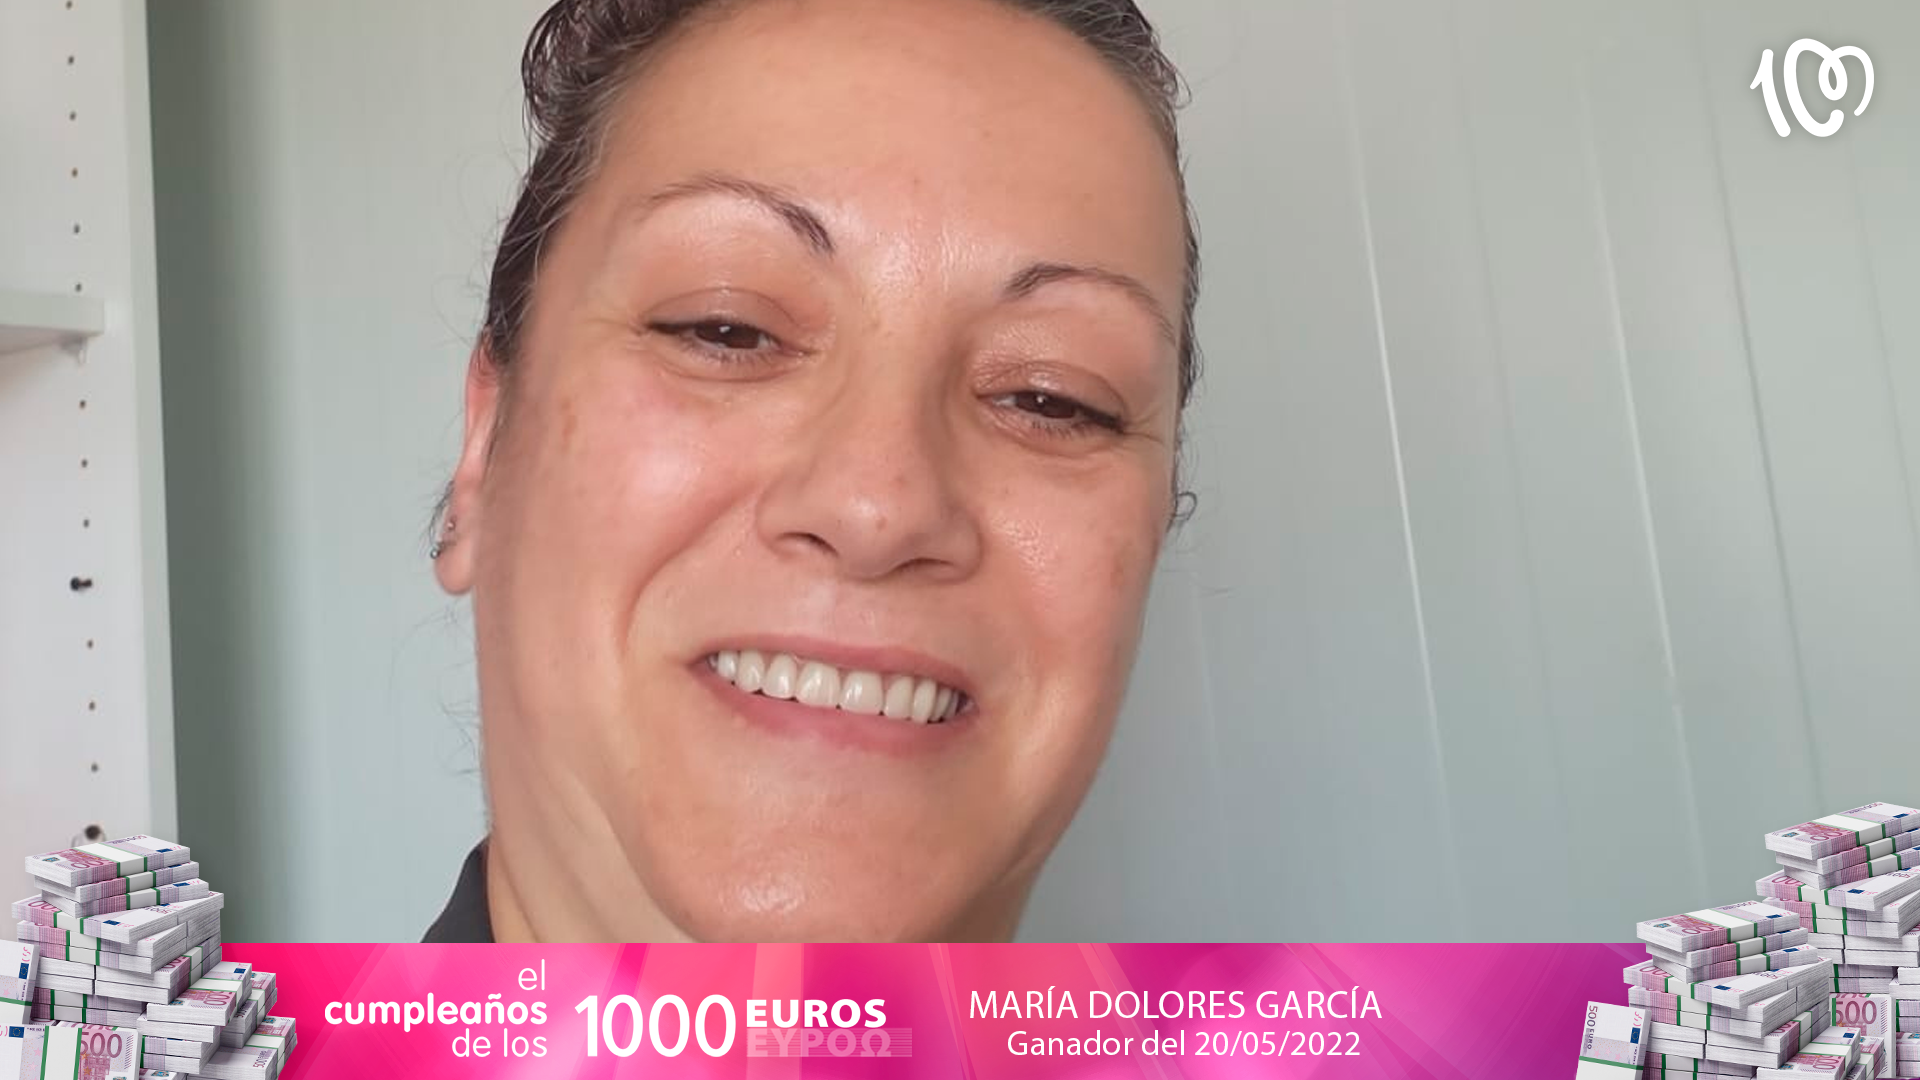 Cumplir años el 29 de febrero ha dado suerte a MªDolores: "¡1.000 euros!"